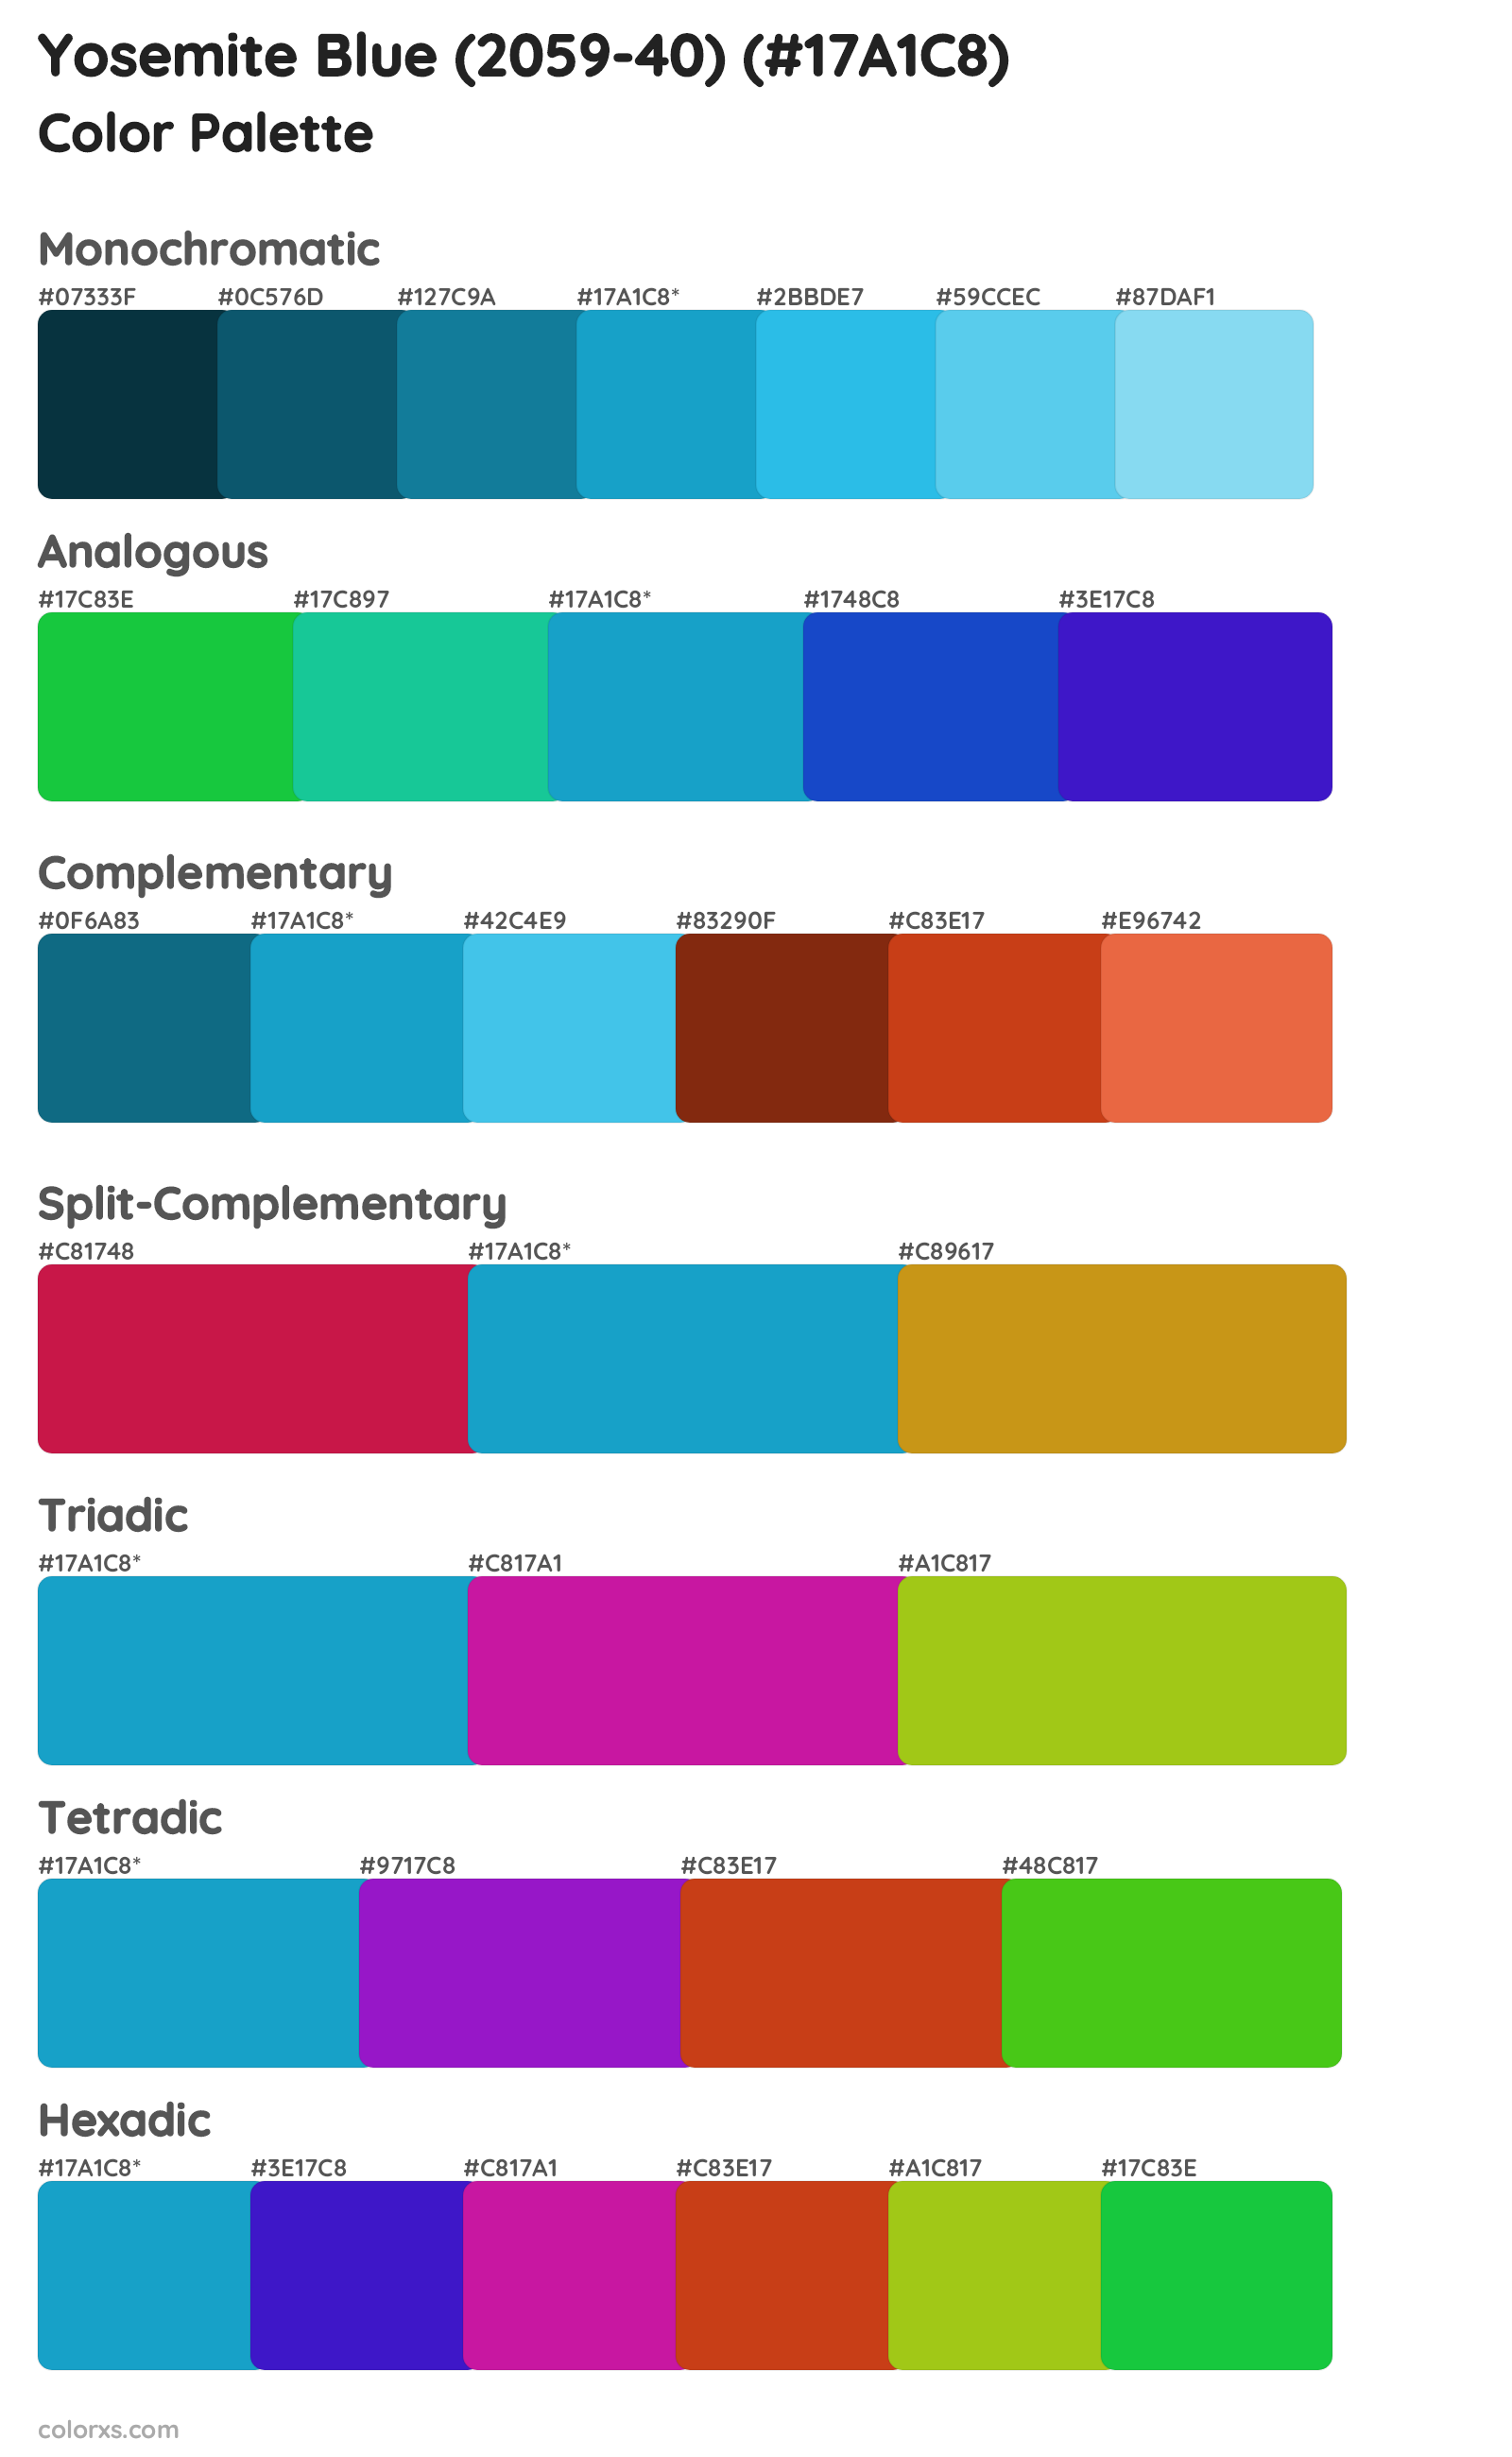 Yosemite Blue (2059-40) Color Scheme Palettes